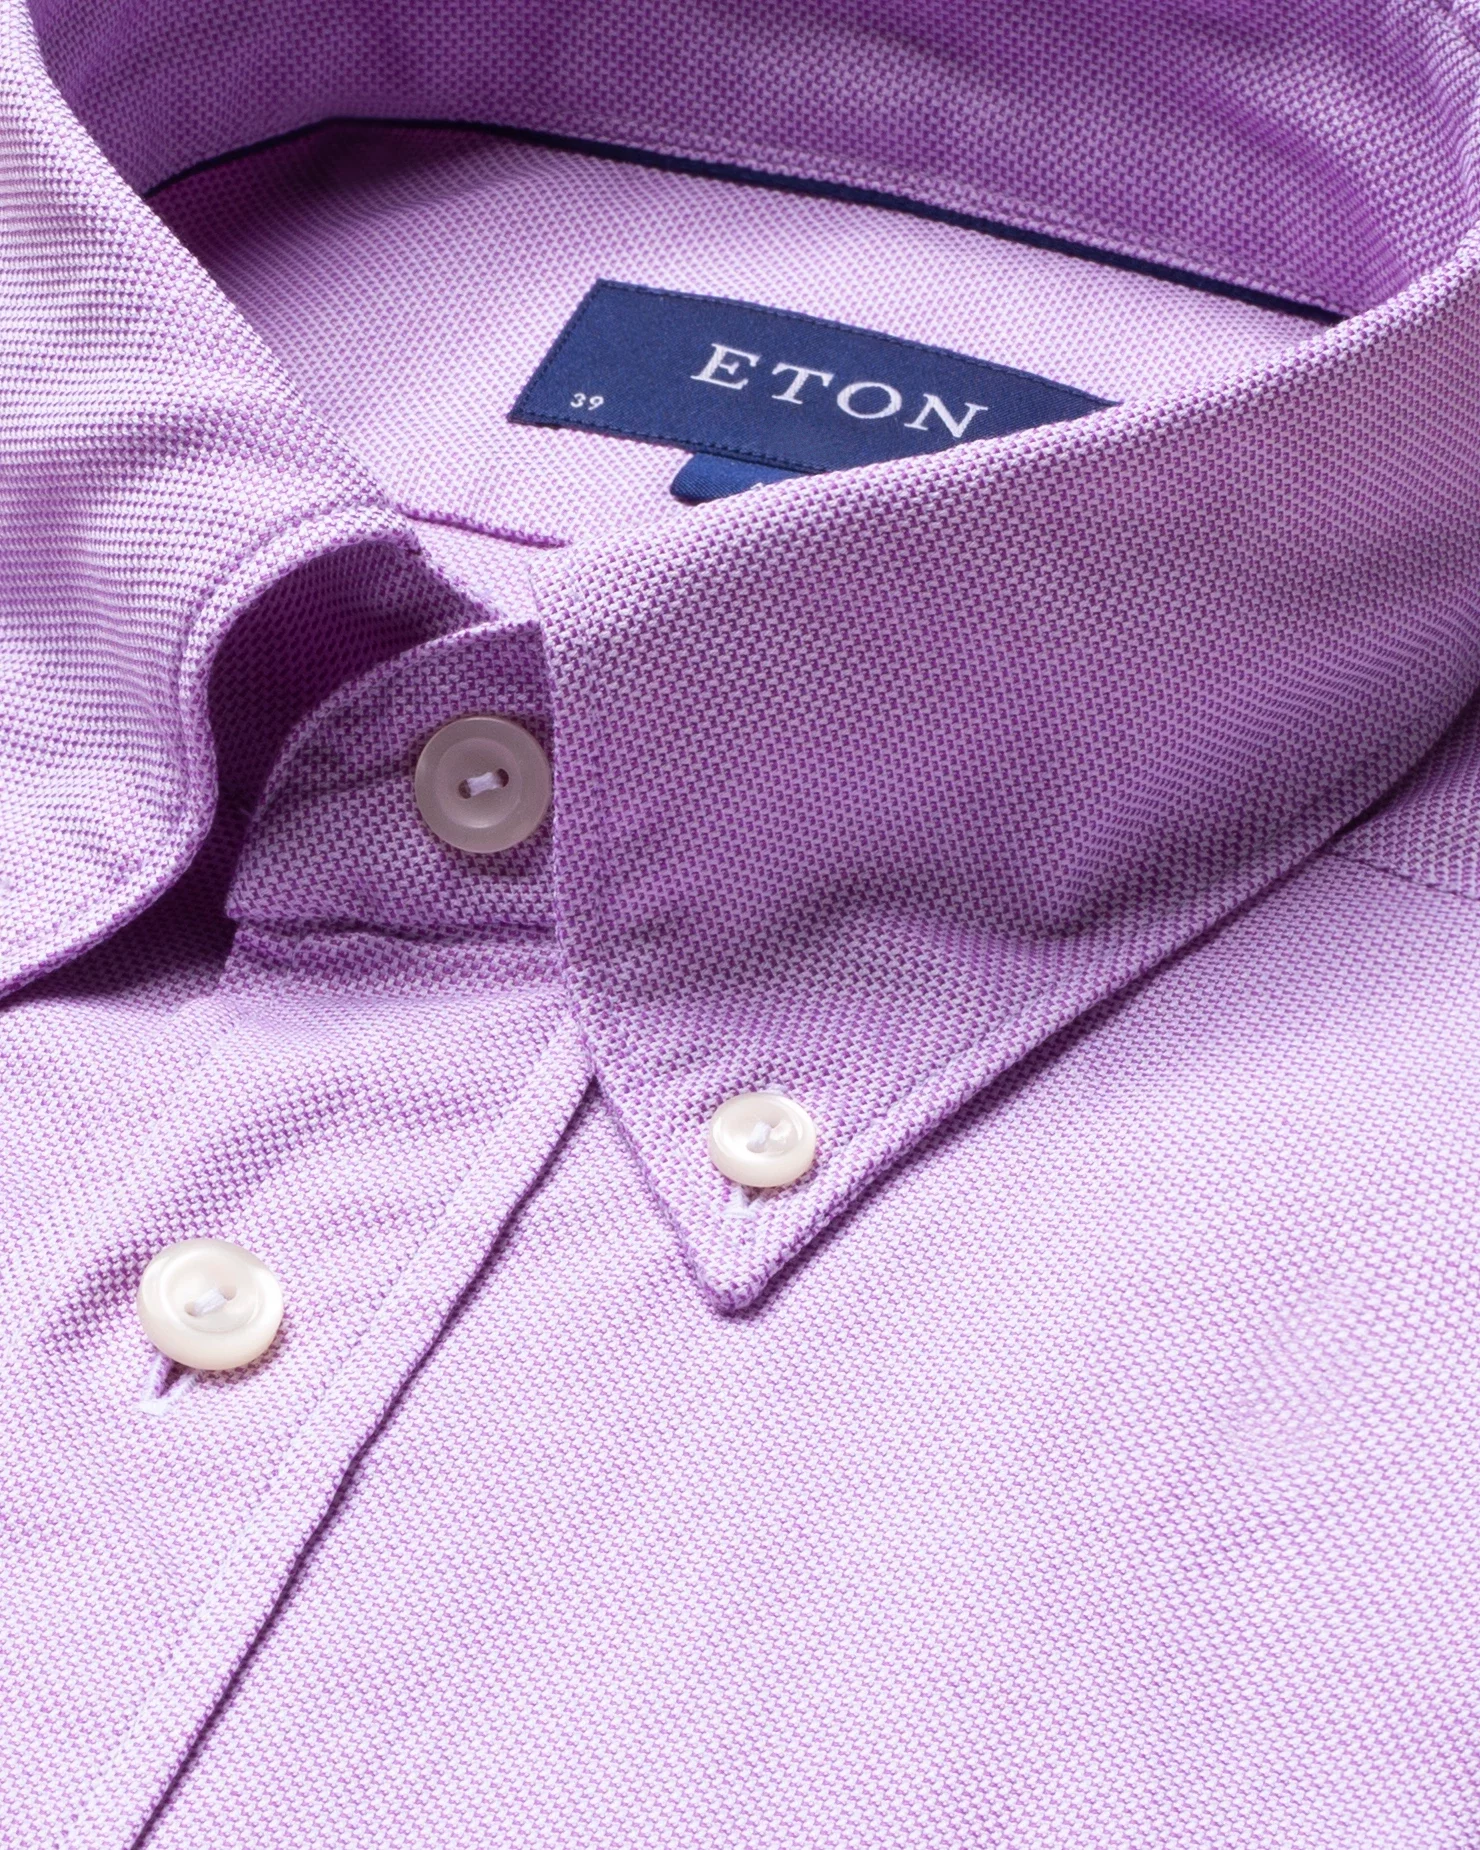 Eton - purple oxford shirt